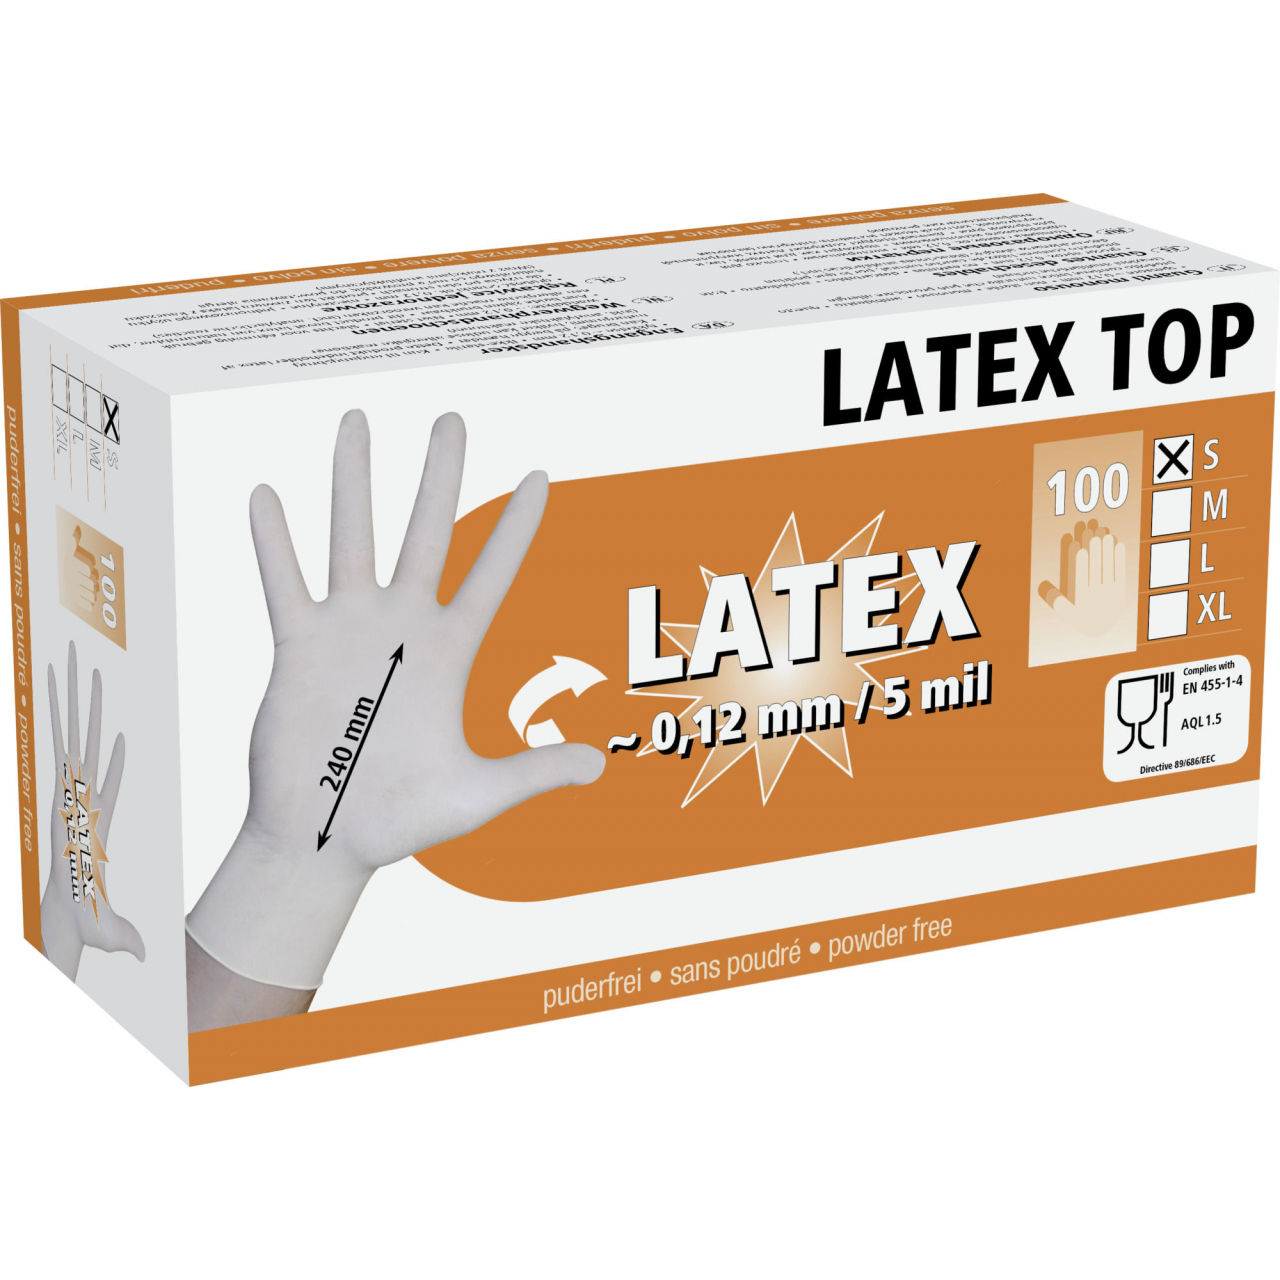 Latex Top egyszer használatos kesztyű